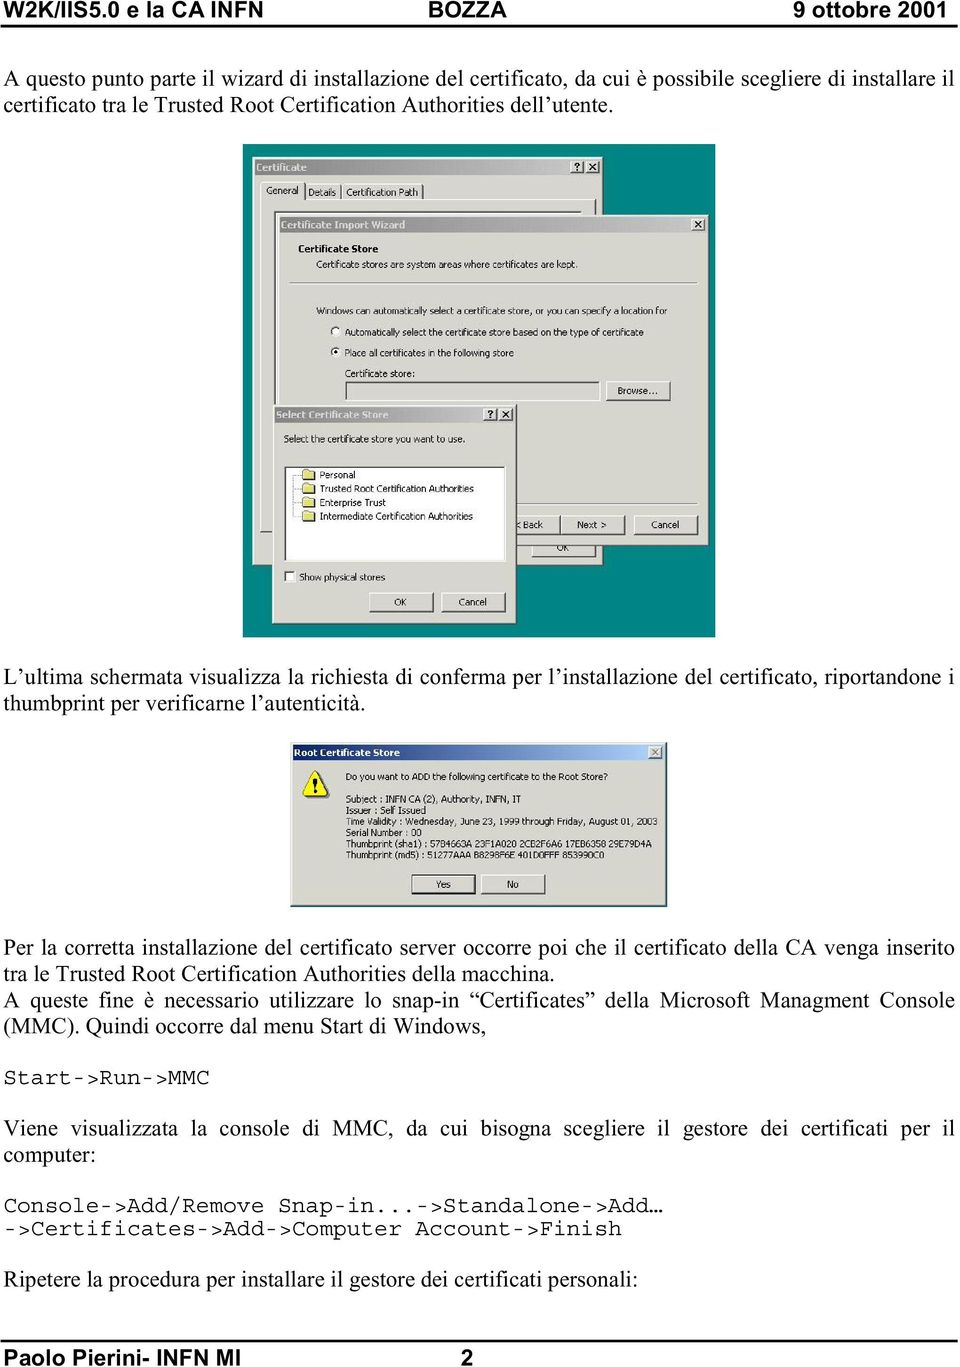 Per la corretta installazione del certificato server occorre poi che il certificato della CA venga inserito tra le Trusted Root Certification Authorities della macchina.